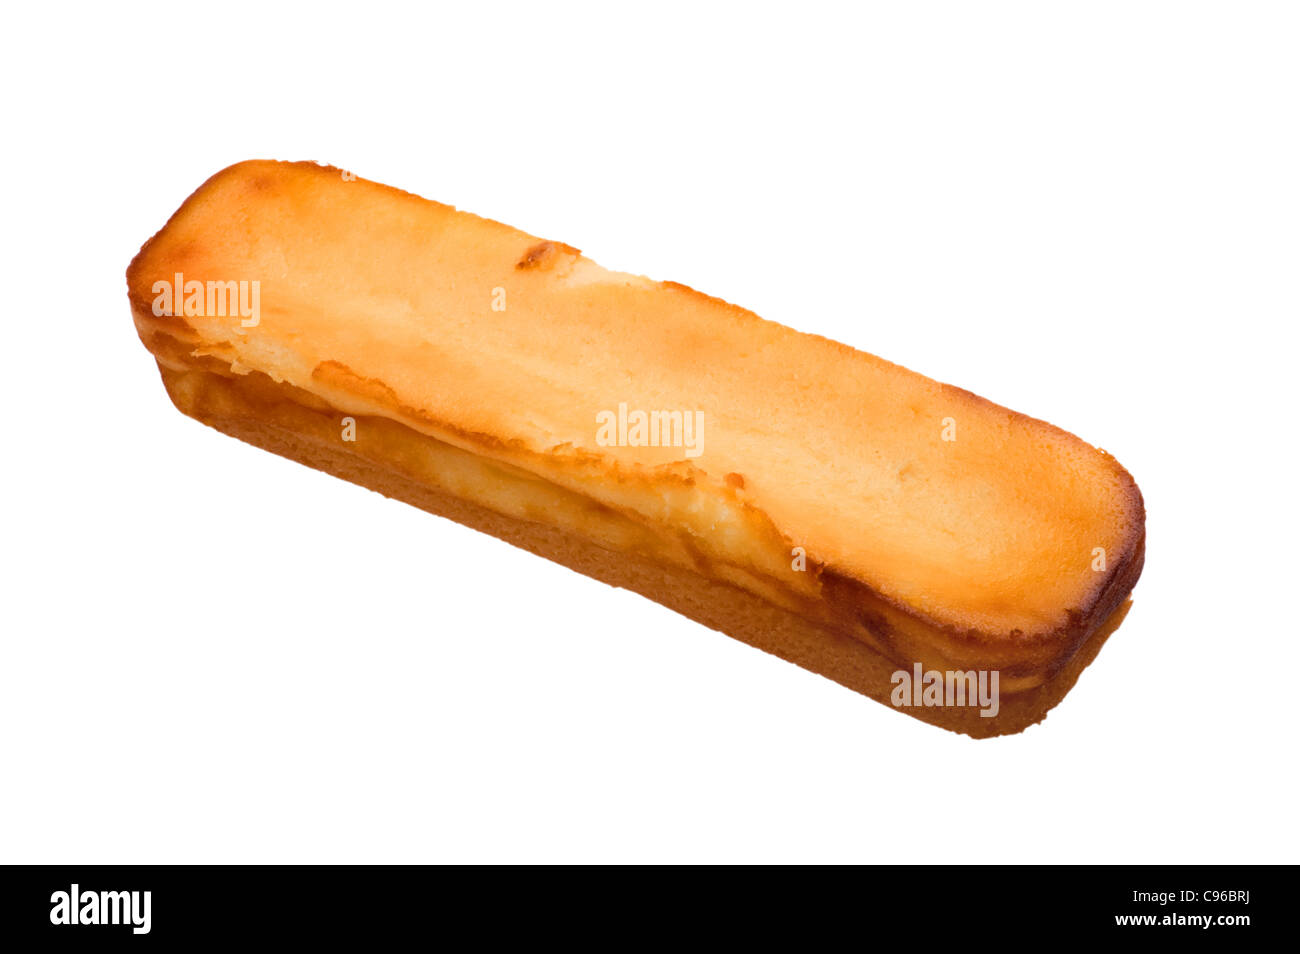 Objekt auf weiß - Food Käsekuchen Bar Stockfoto